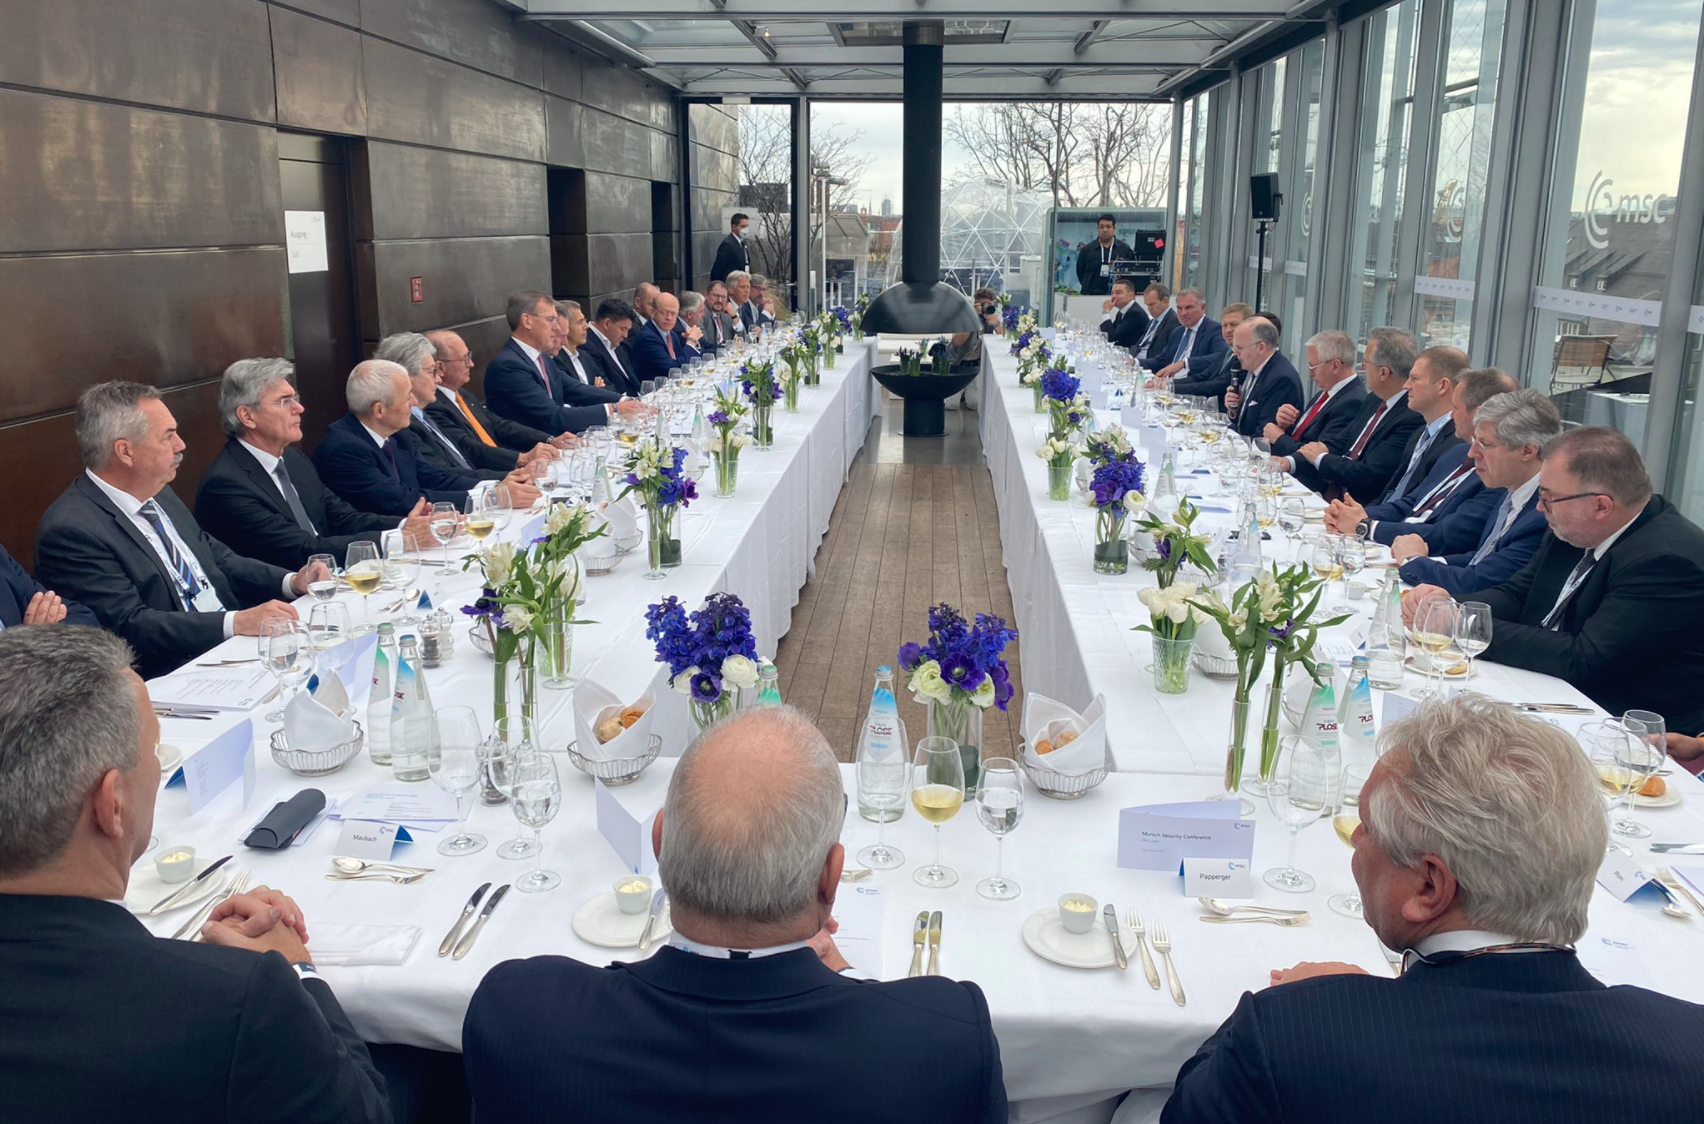 Dieses Foto vom Business-Lunch bei der Münchner Sicherheitskonferenz sorgt für Aufsehen.